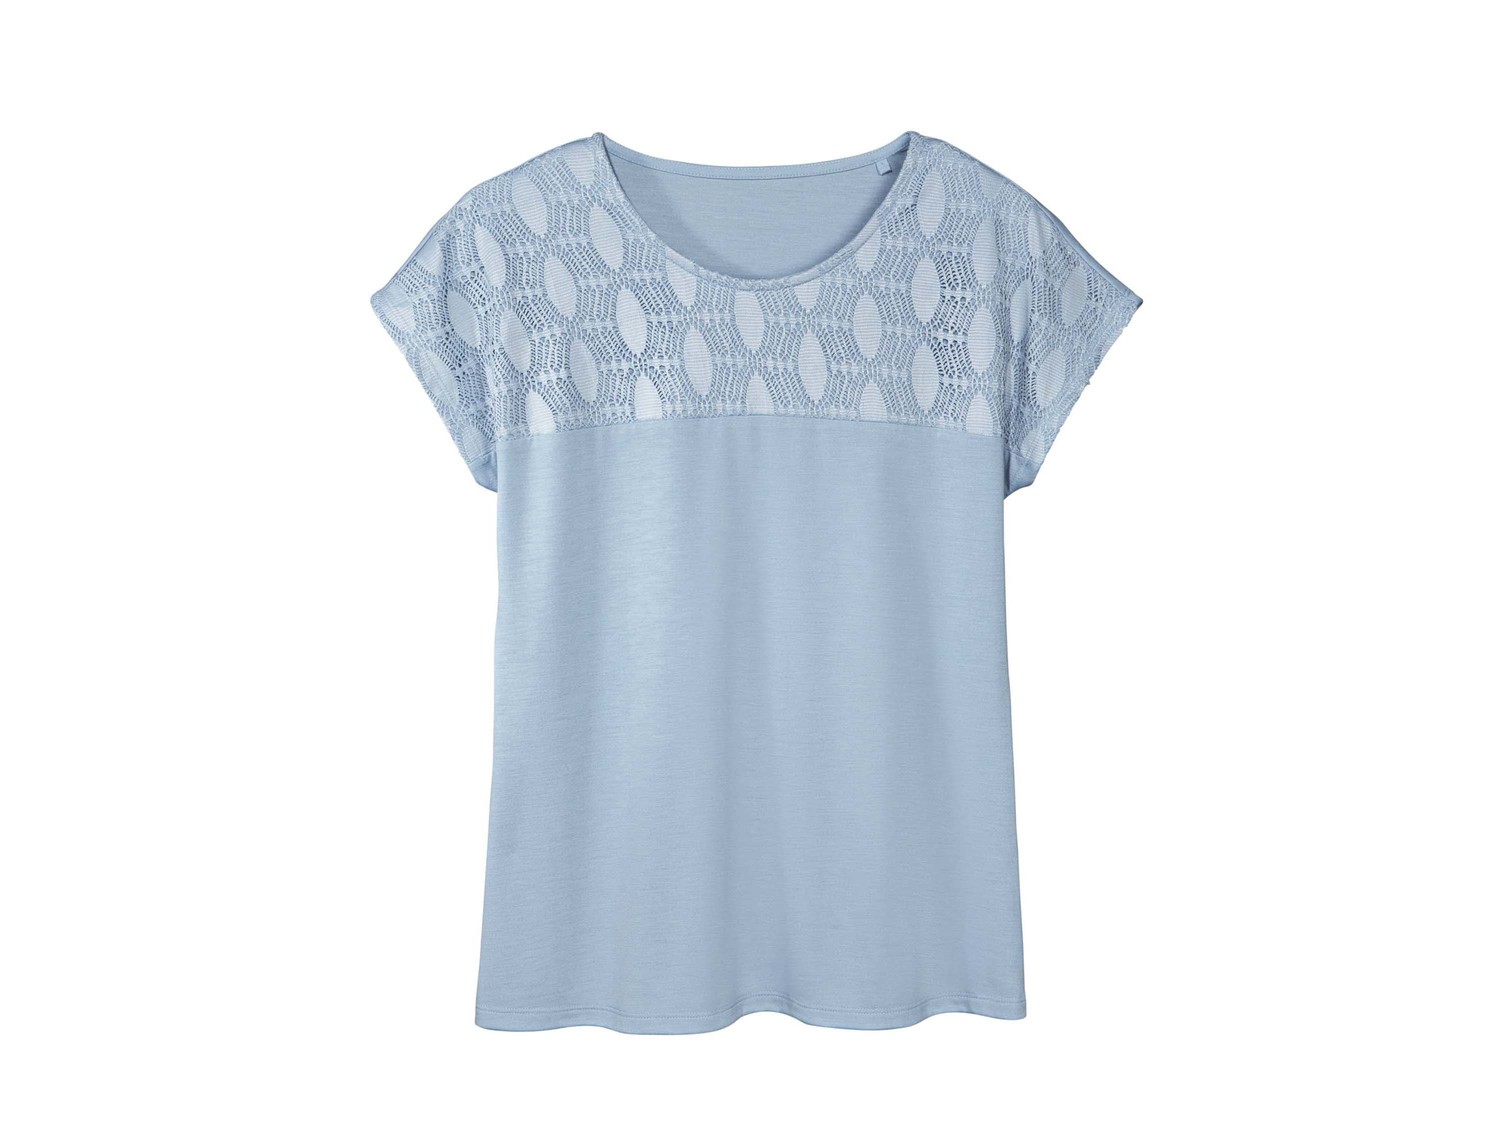 T-shirt Esmara, prezzo 4.99 &#8364;  
Misure: S-XL